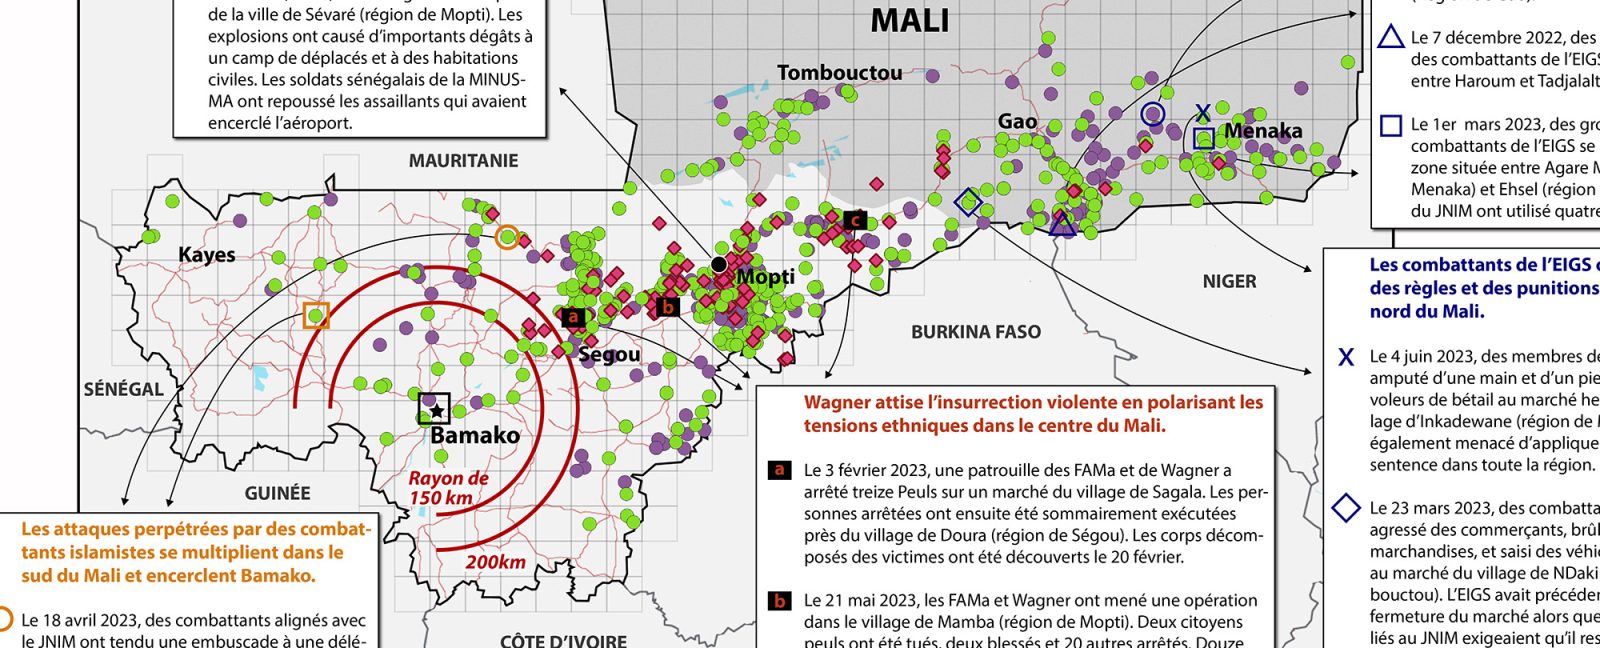 Au Mali, la catastrophe s’accélère sous le régime de la junte